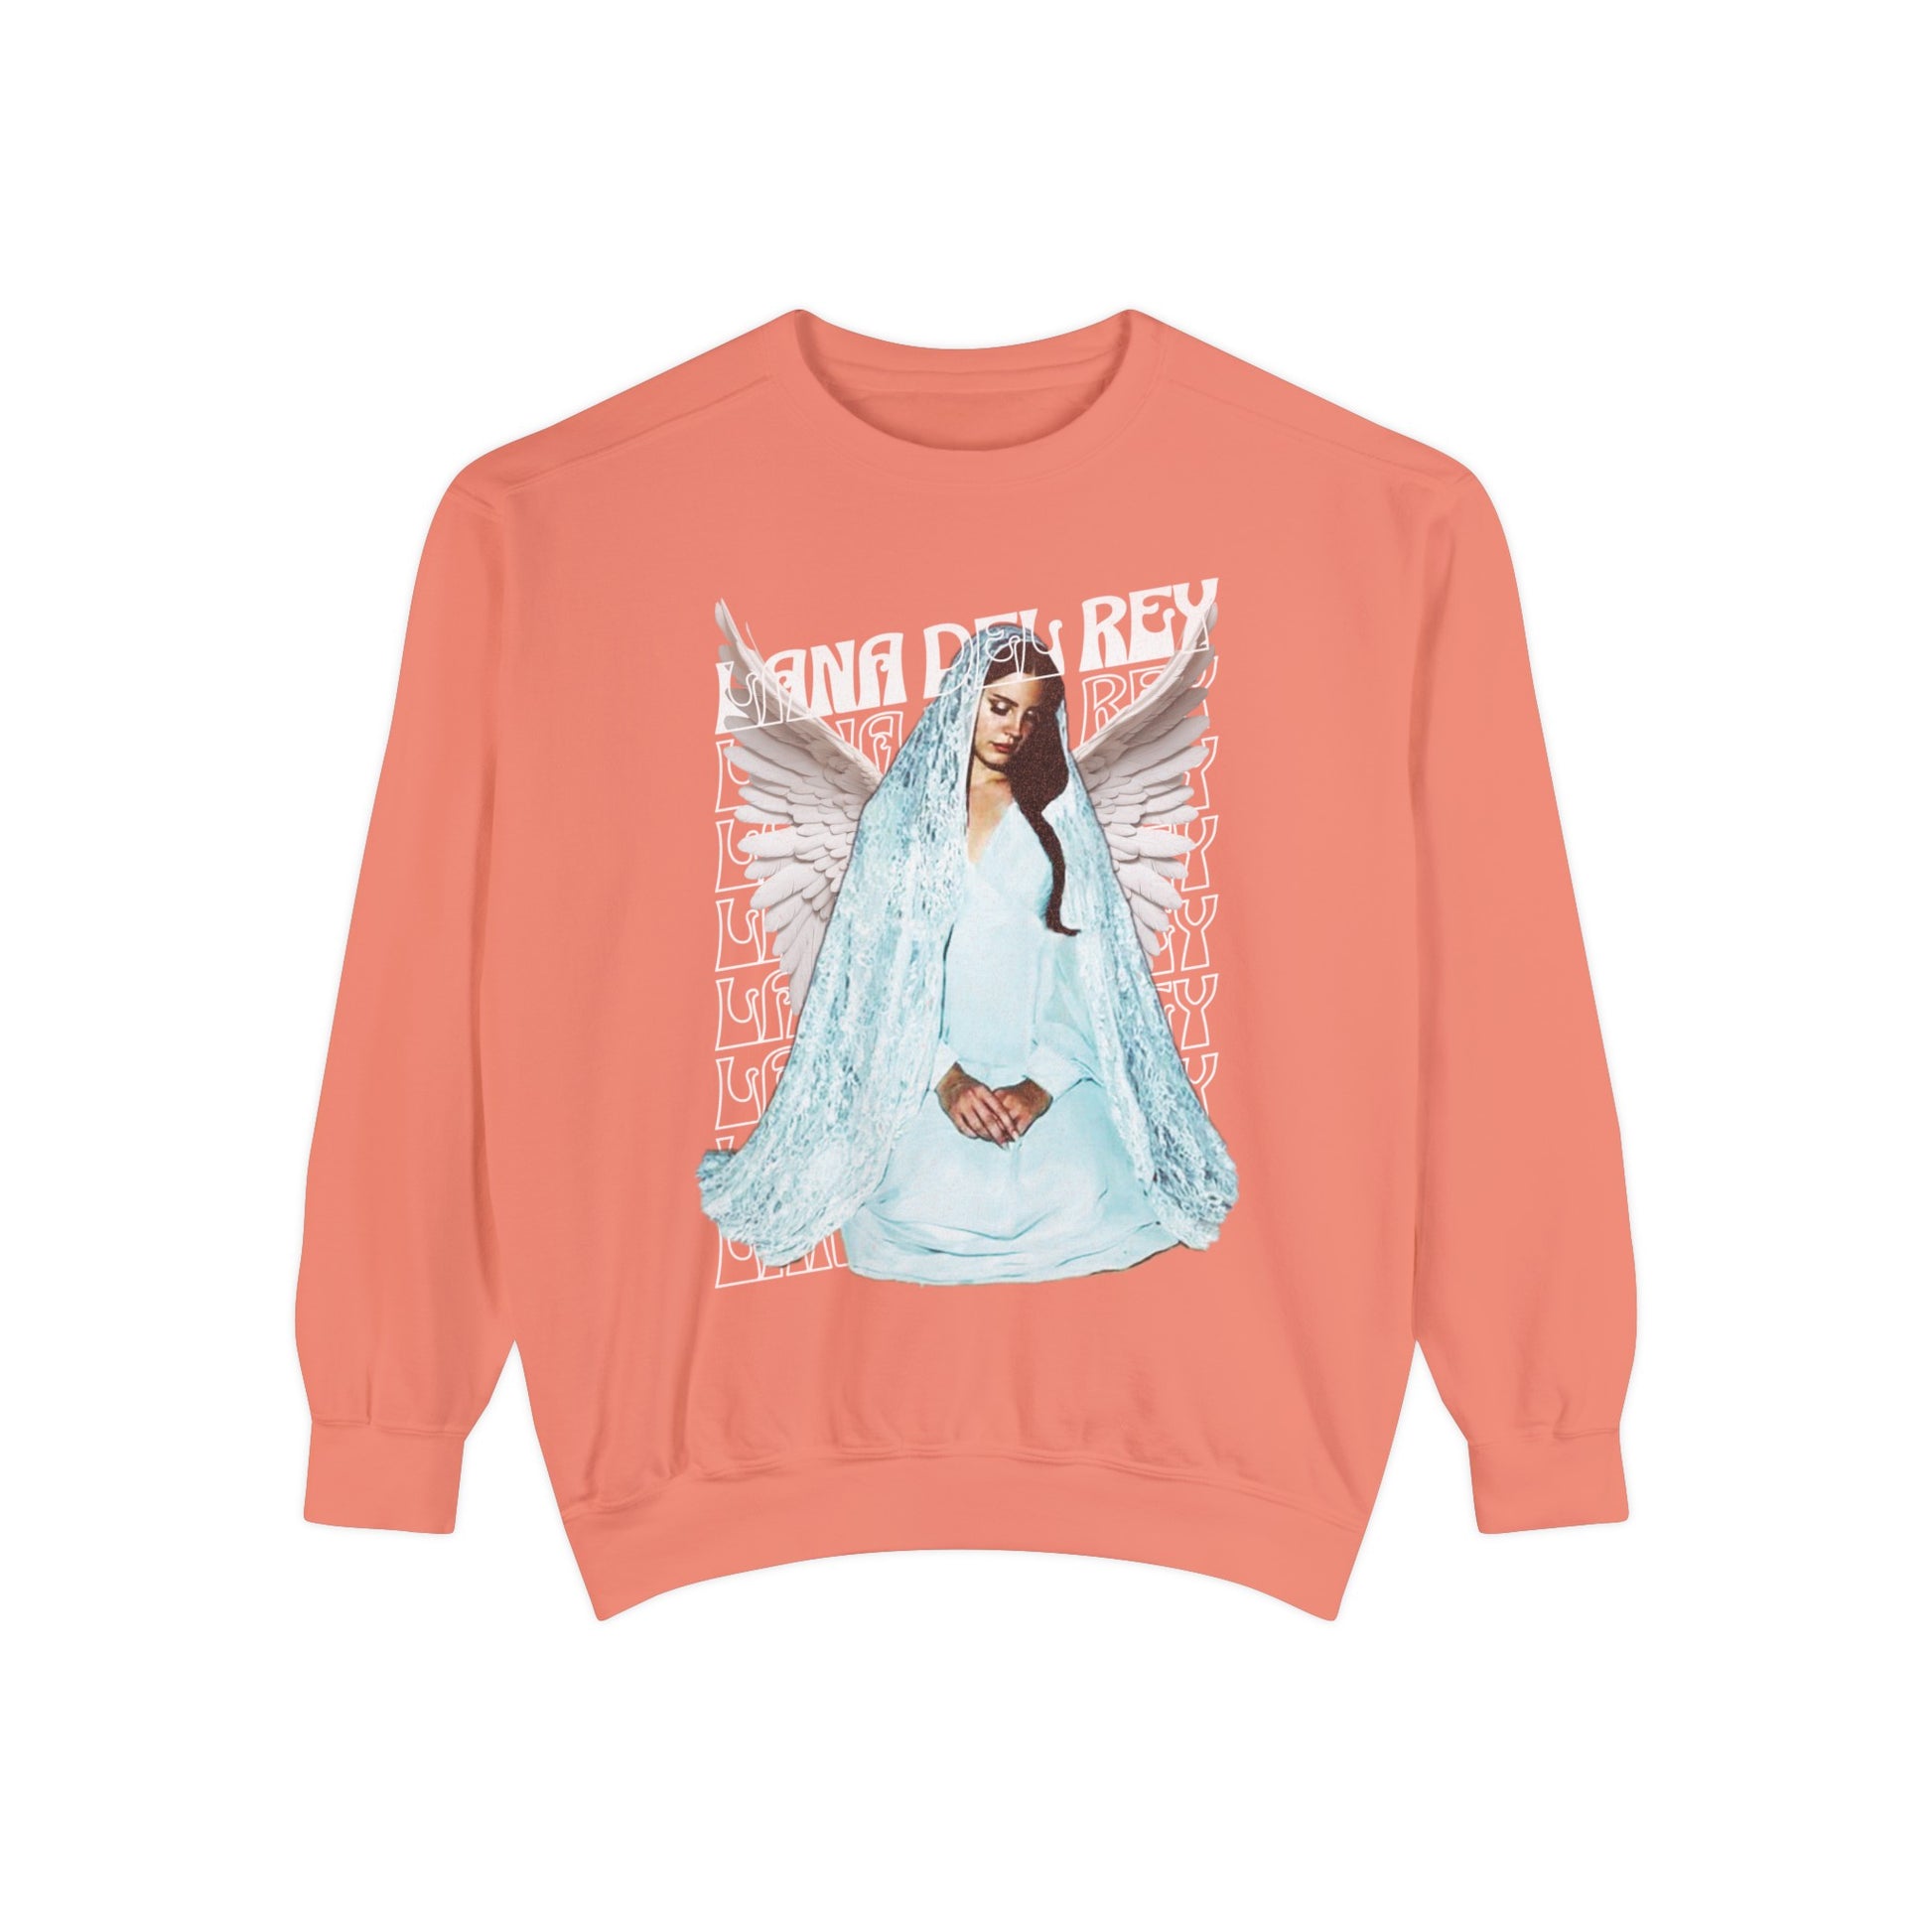 Lana Del Rey Sweatshirt Terracotta